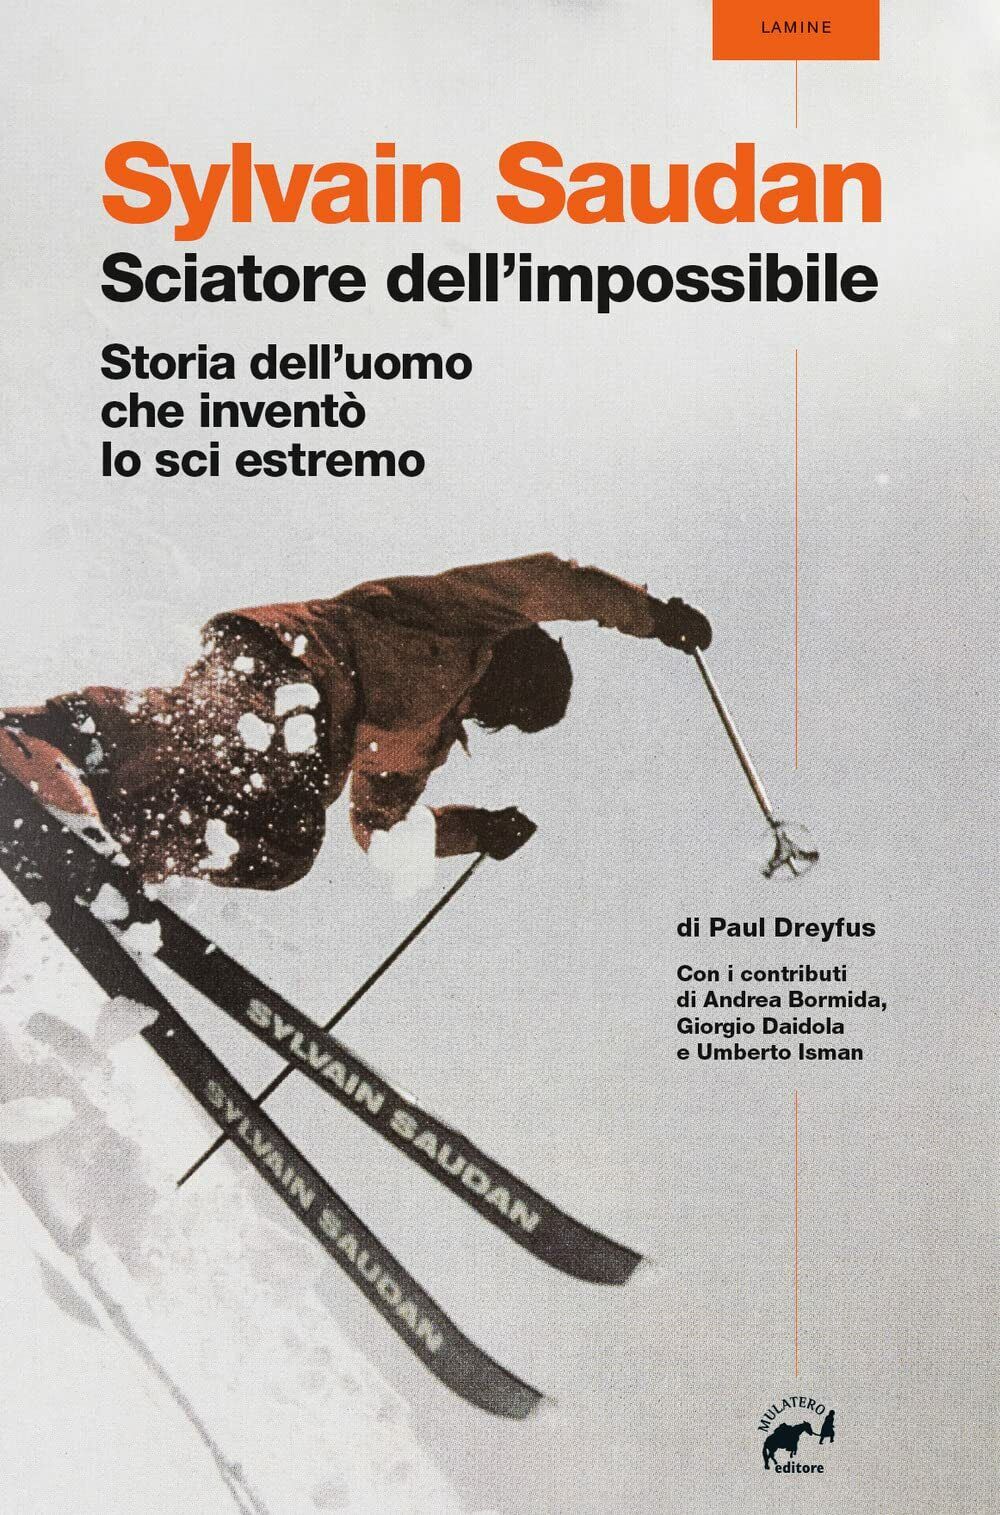 Sylvain Saudan, lo sciatore dell'impossibile - Paul Dreyfus - Mulatero, 2022